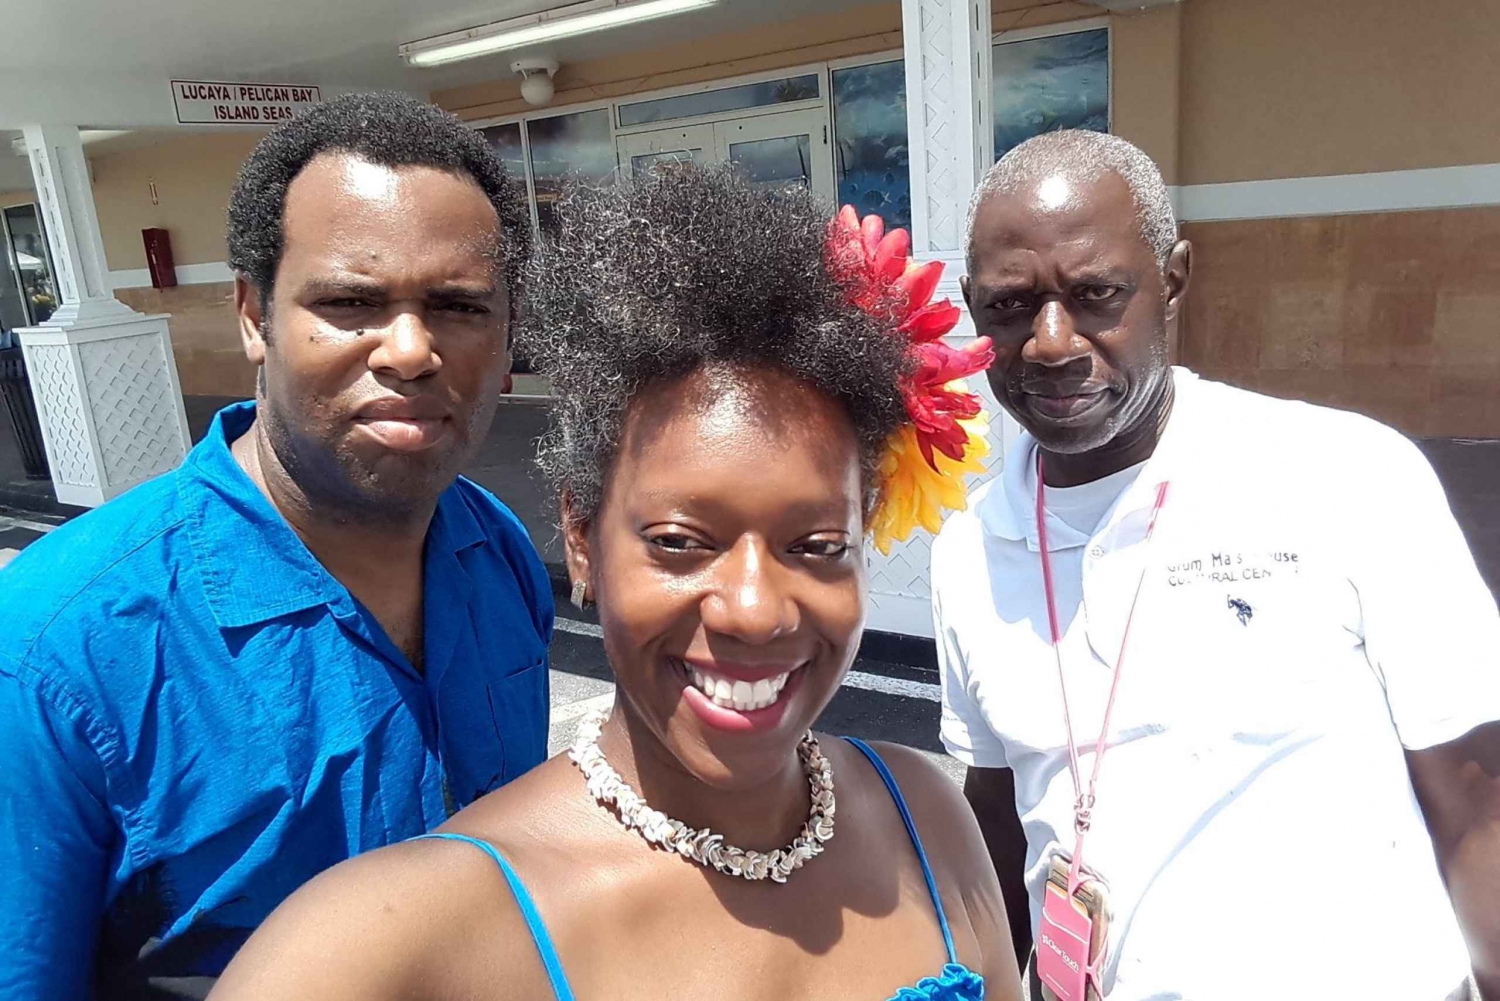 Freeport Bahamas: Your Bahamas Souvenir Experience with tea